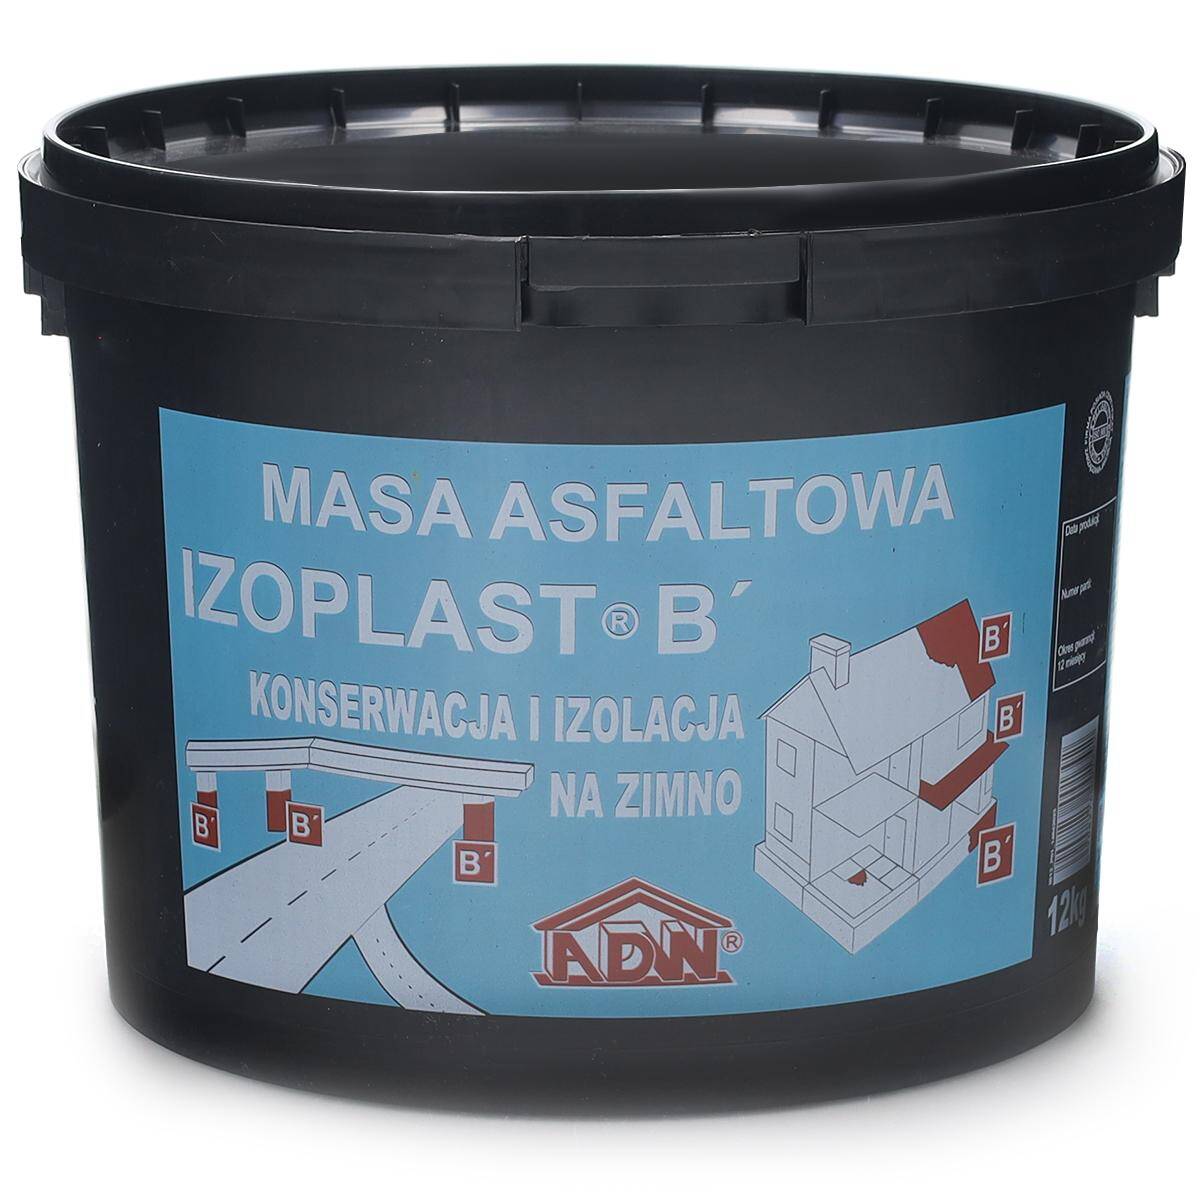 Izoplast B asfaltowa masa do izolacji i konserwacji pap 12 kg ADW